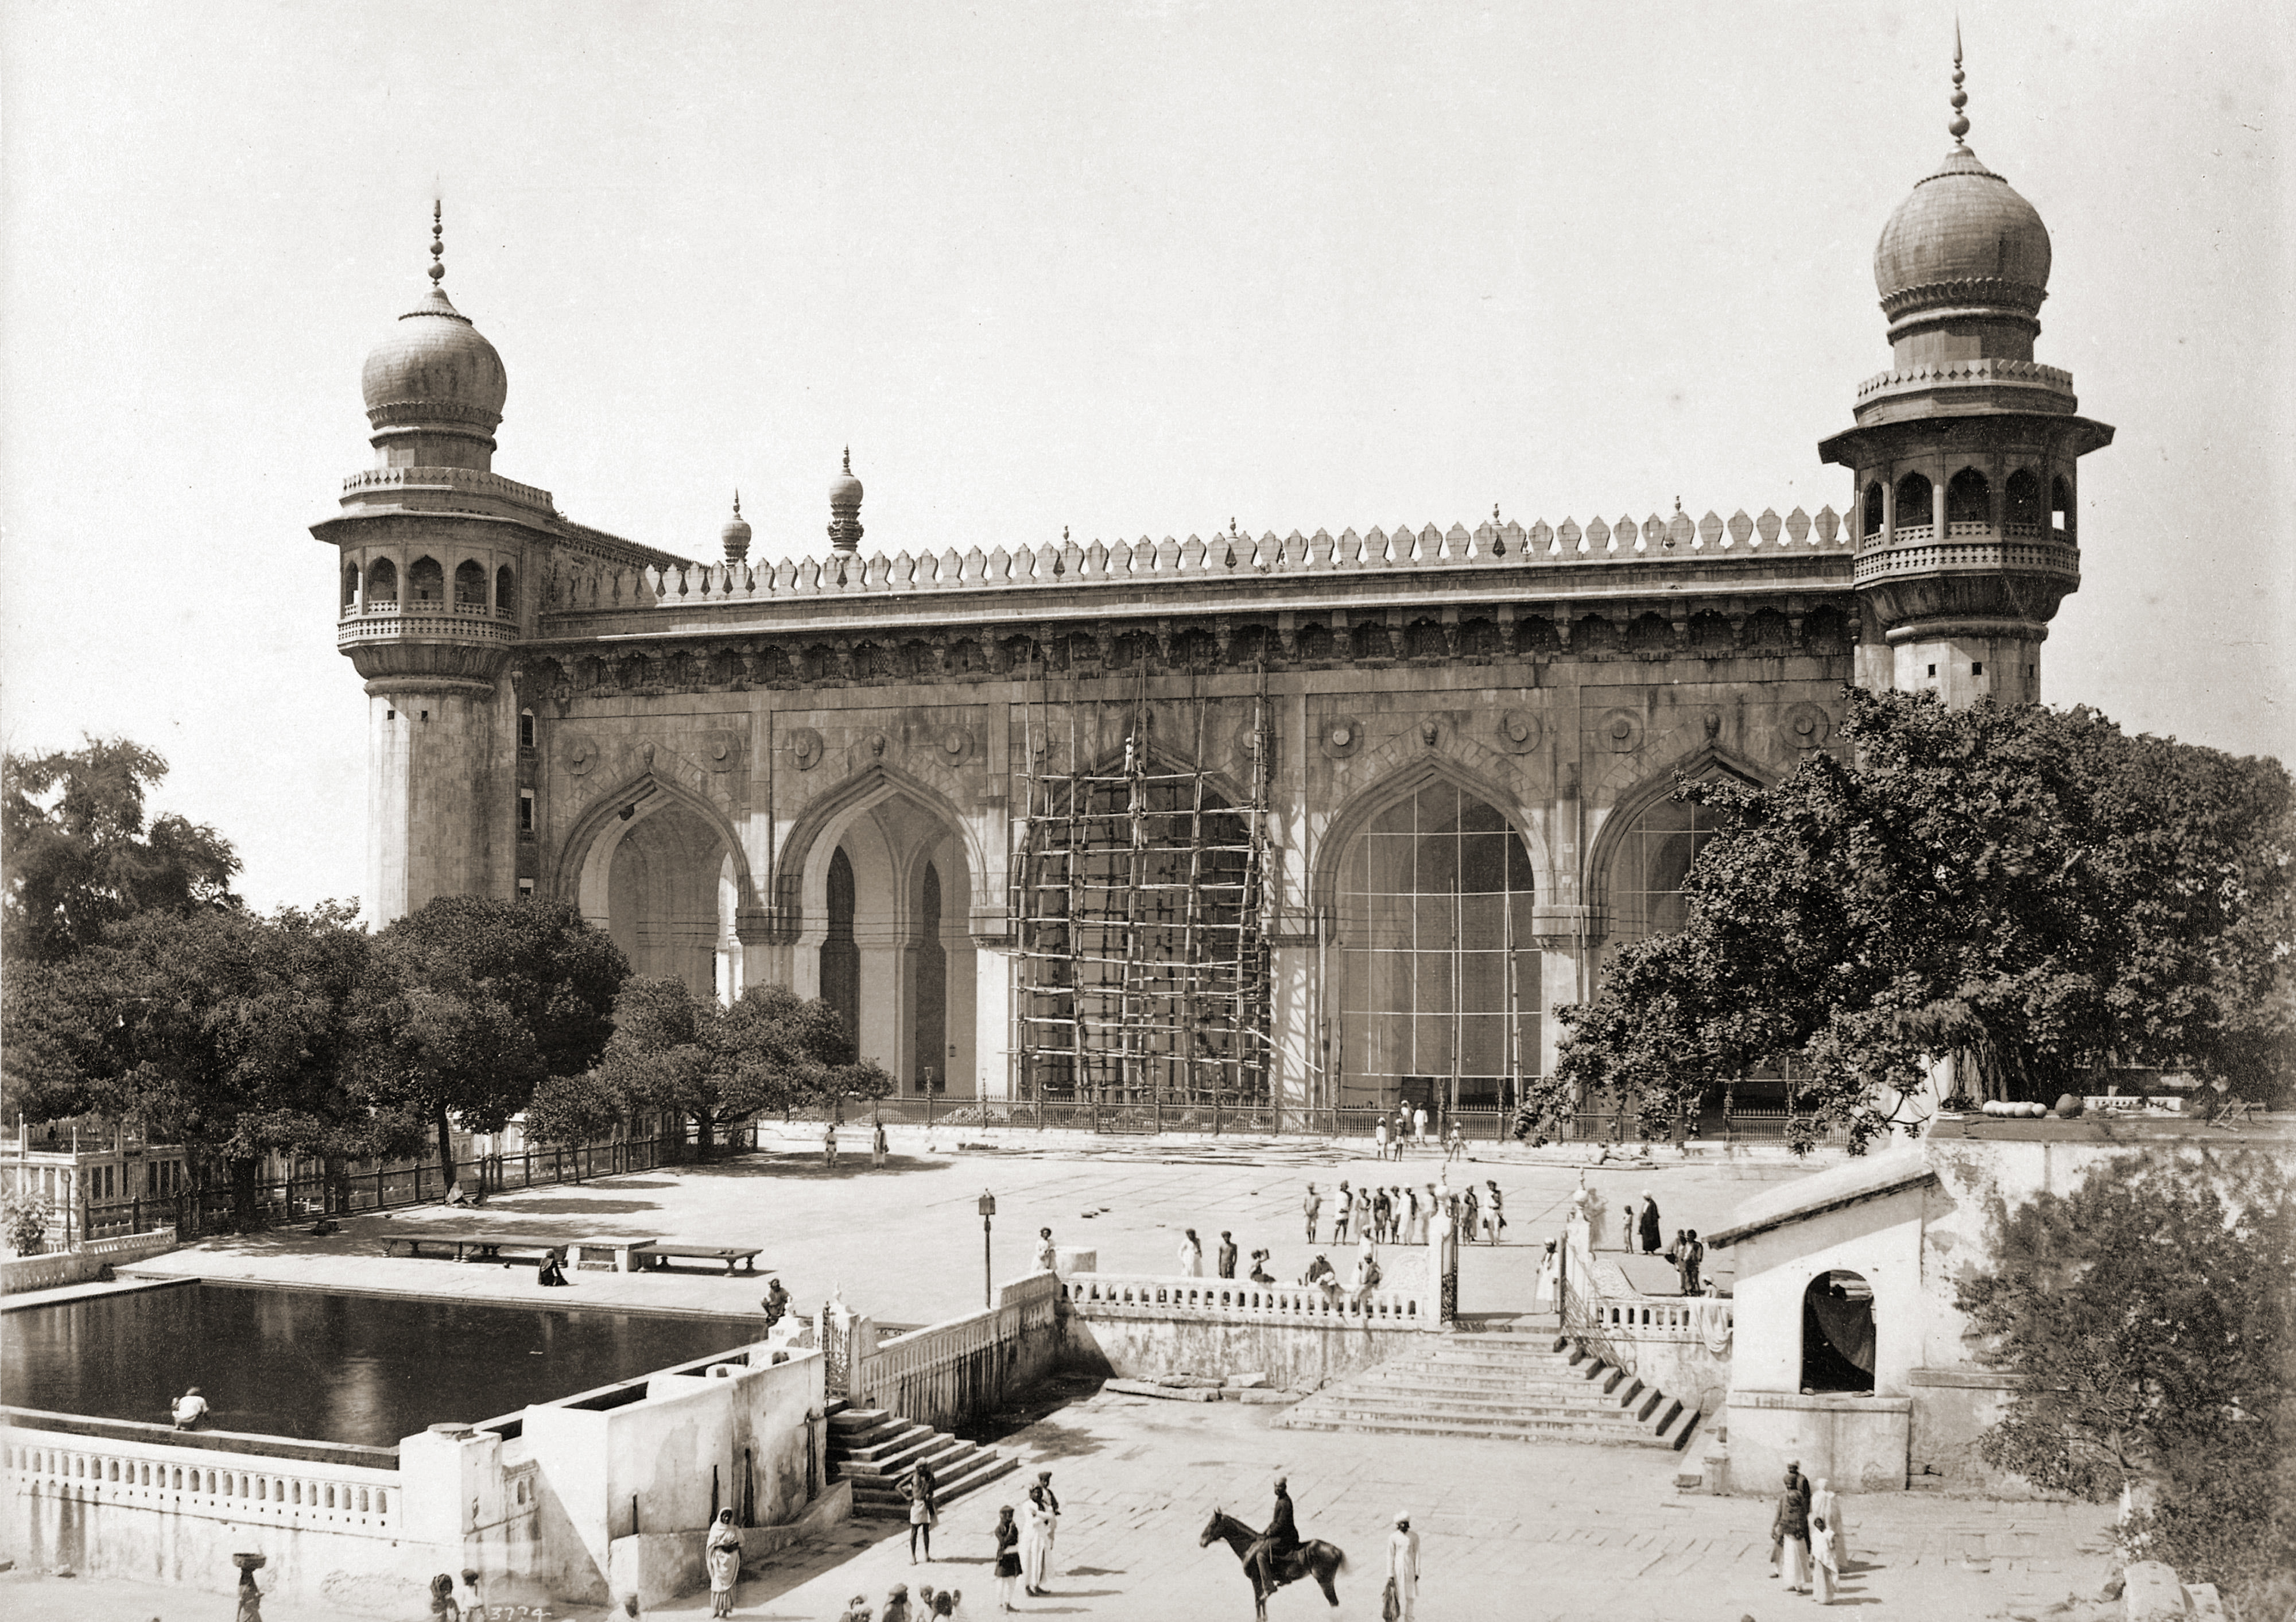  Hindistan'daki Mekke mescidinin Deen Dayal tarafından 1880'ler çekilmiş bir fotoğrafı. Avlusunda yerel halkta insanlar görülüyor.